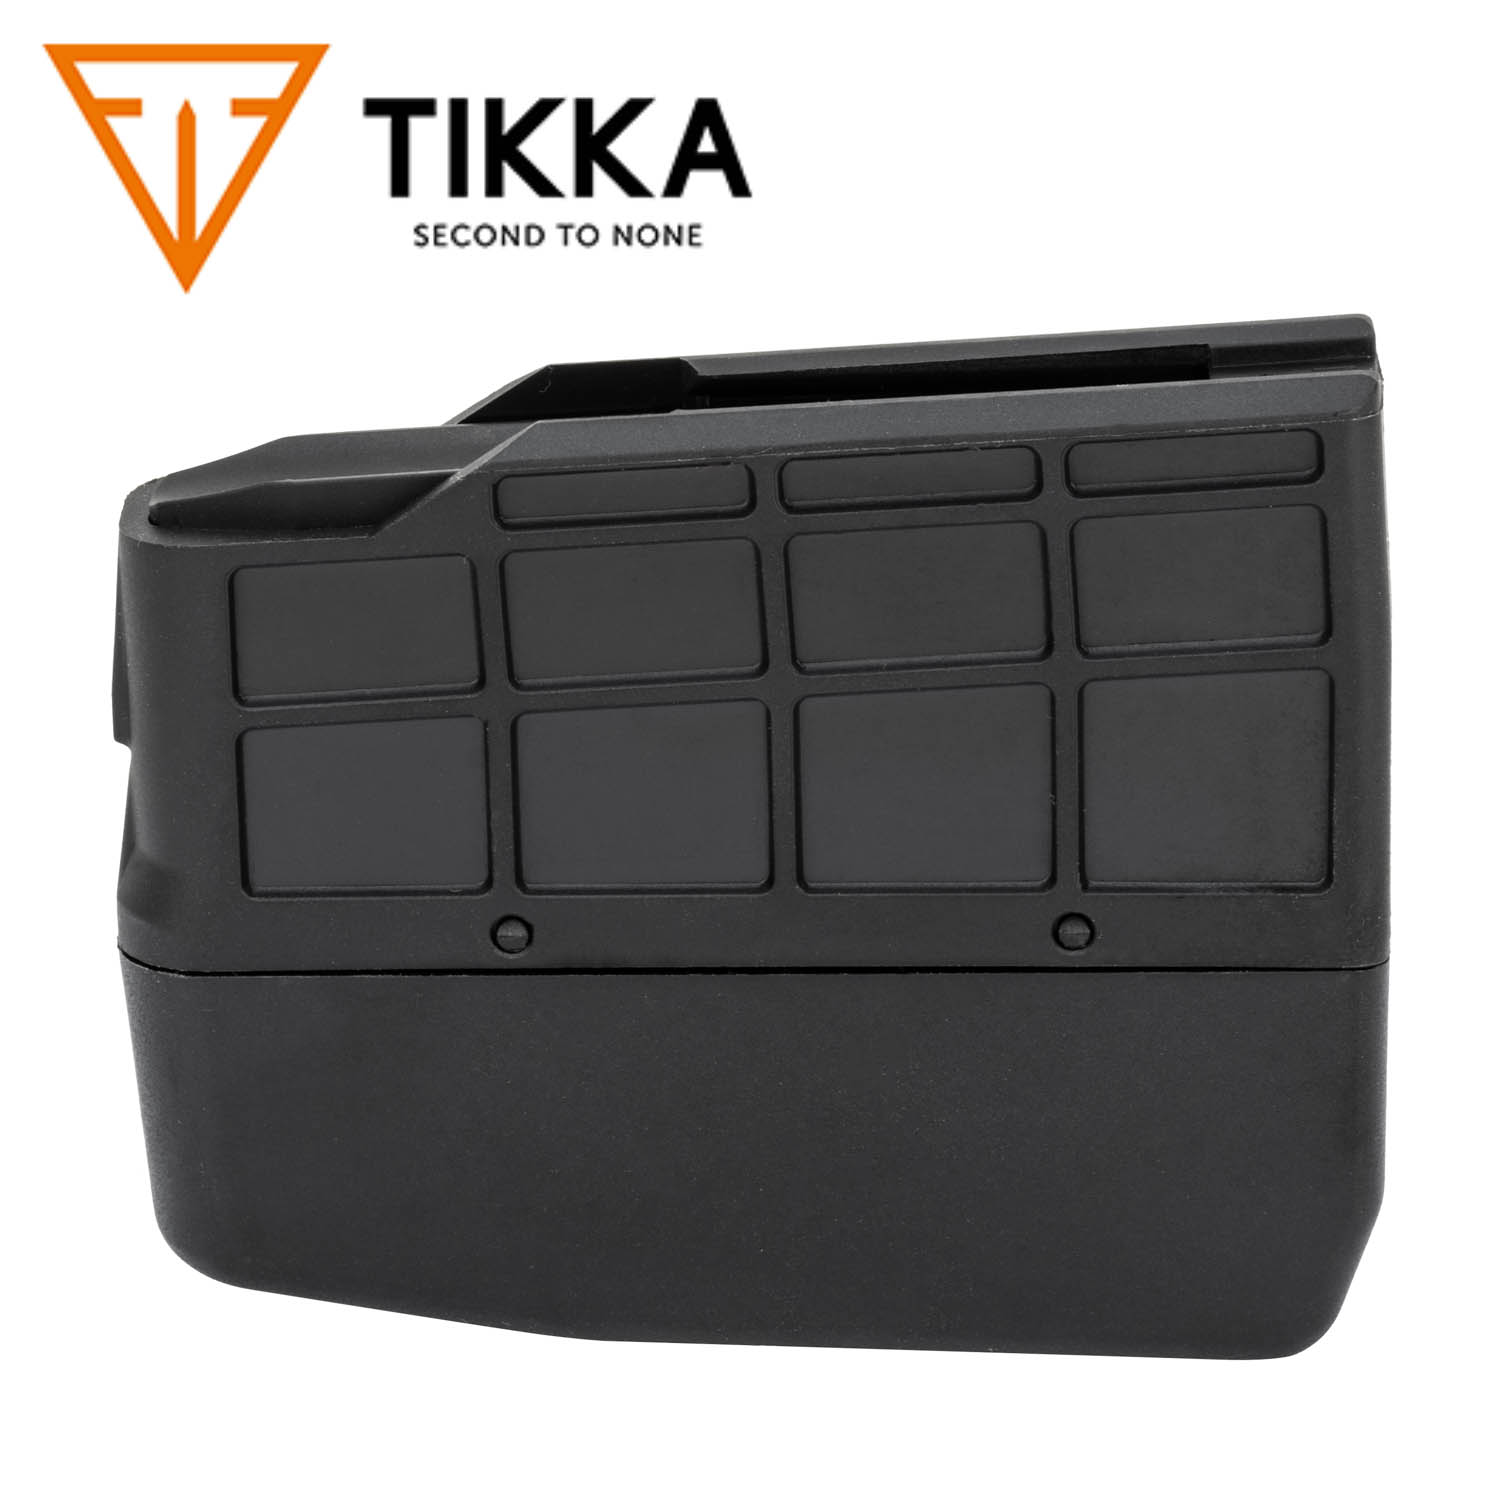 Tikka T3 TAC .308 With Accessories - BladeForums.com